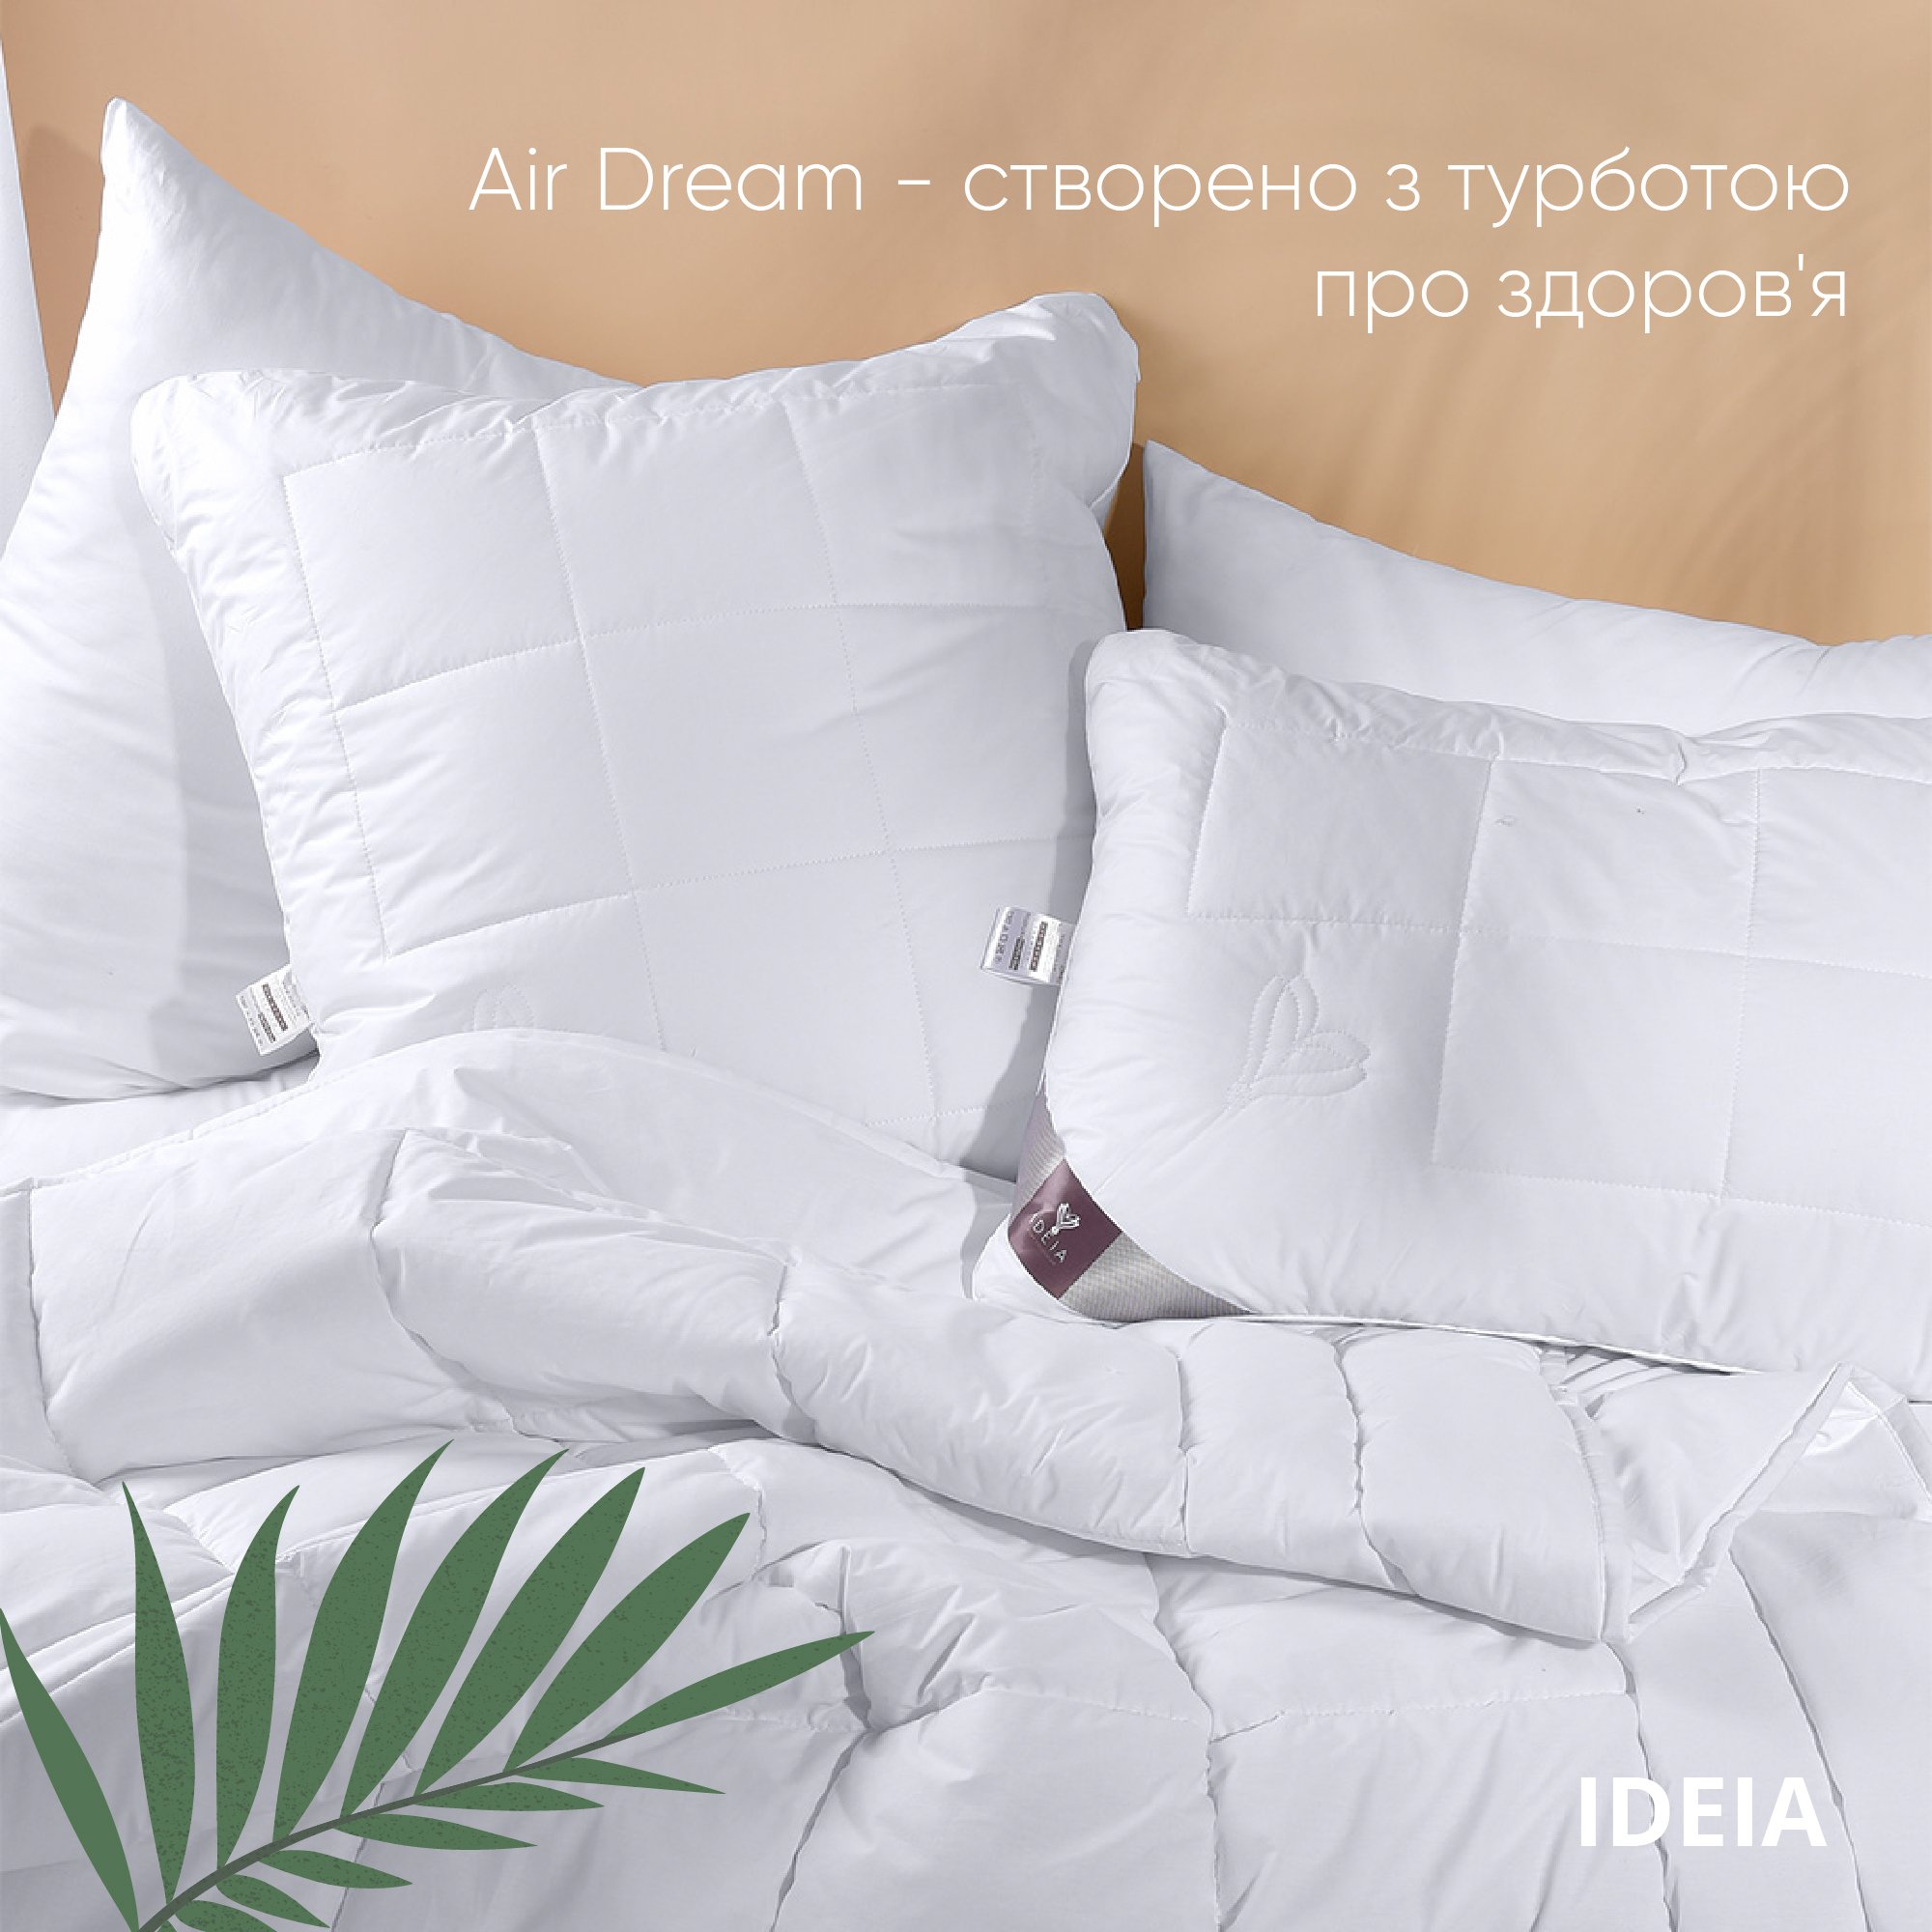 Одеяло Ideia Air Dream Premium летнее, 210х140, белый (8-11693) - фото 5